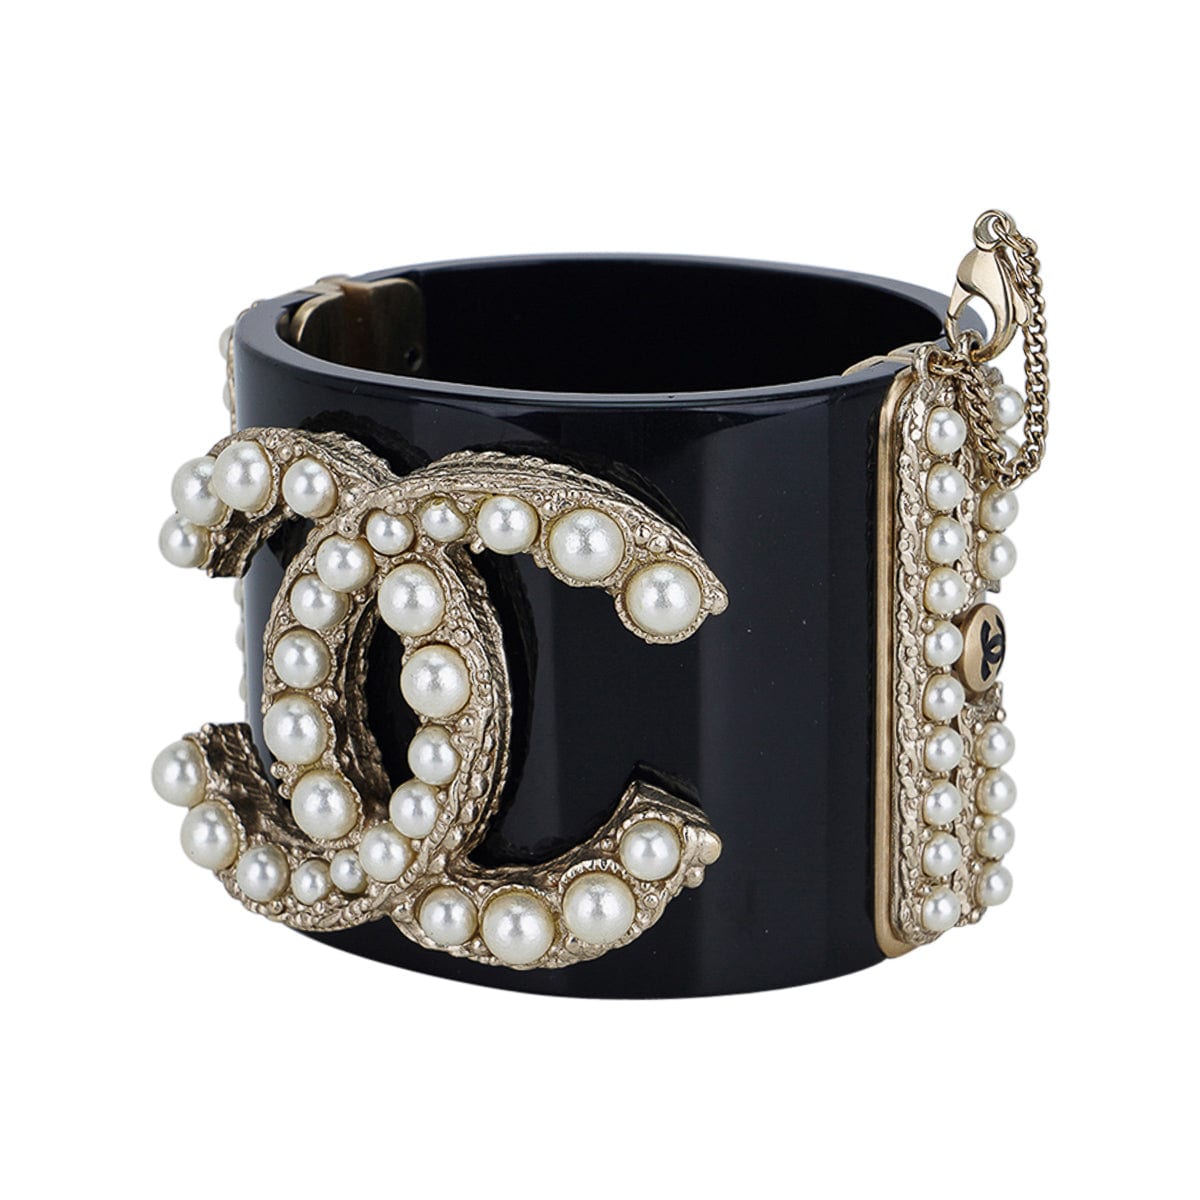 Chanel Chain Link No. 5 Clover CC Bracelet